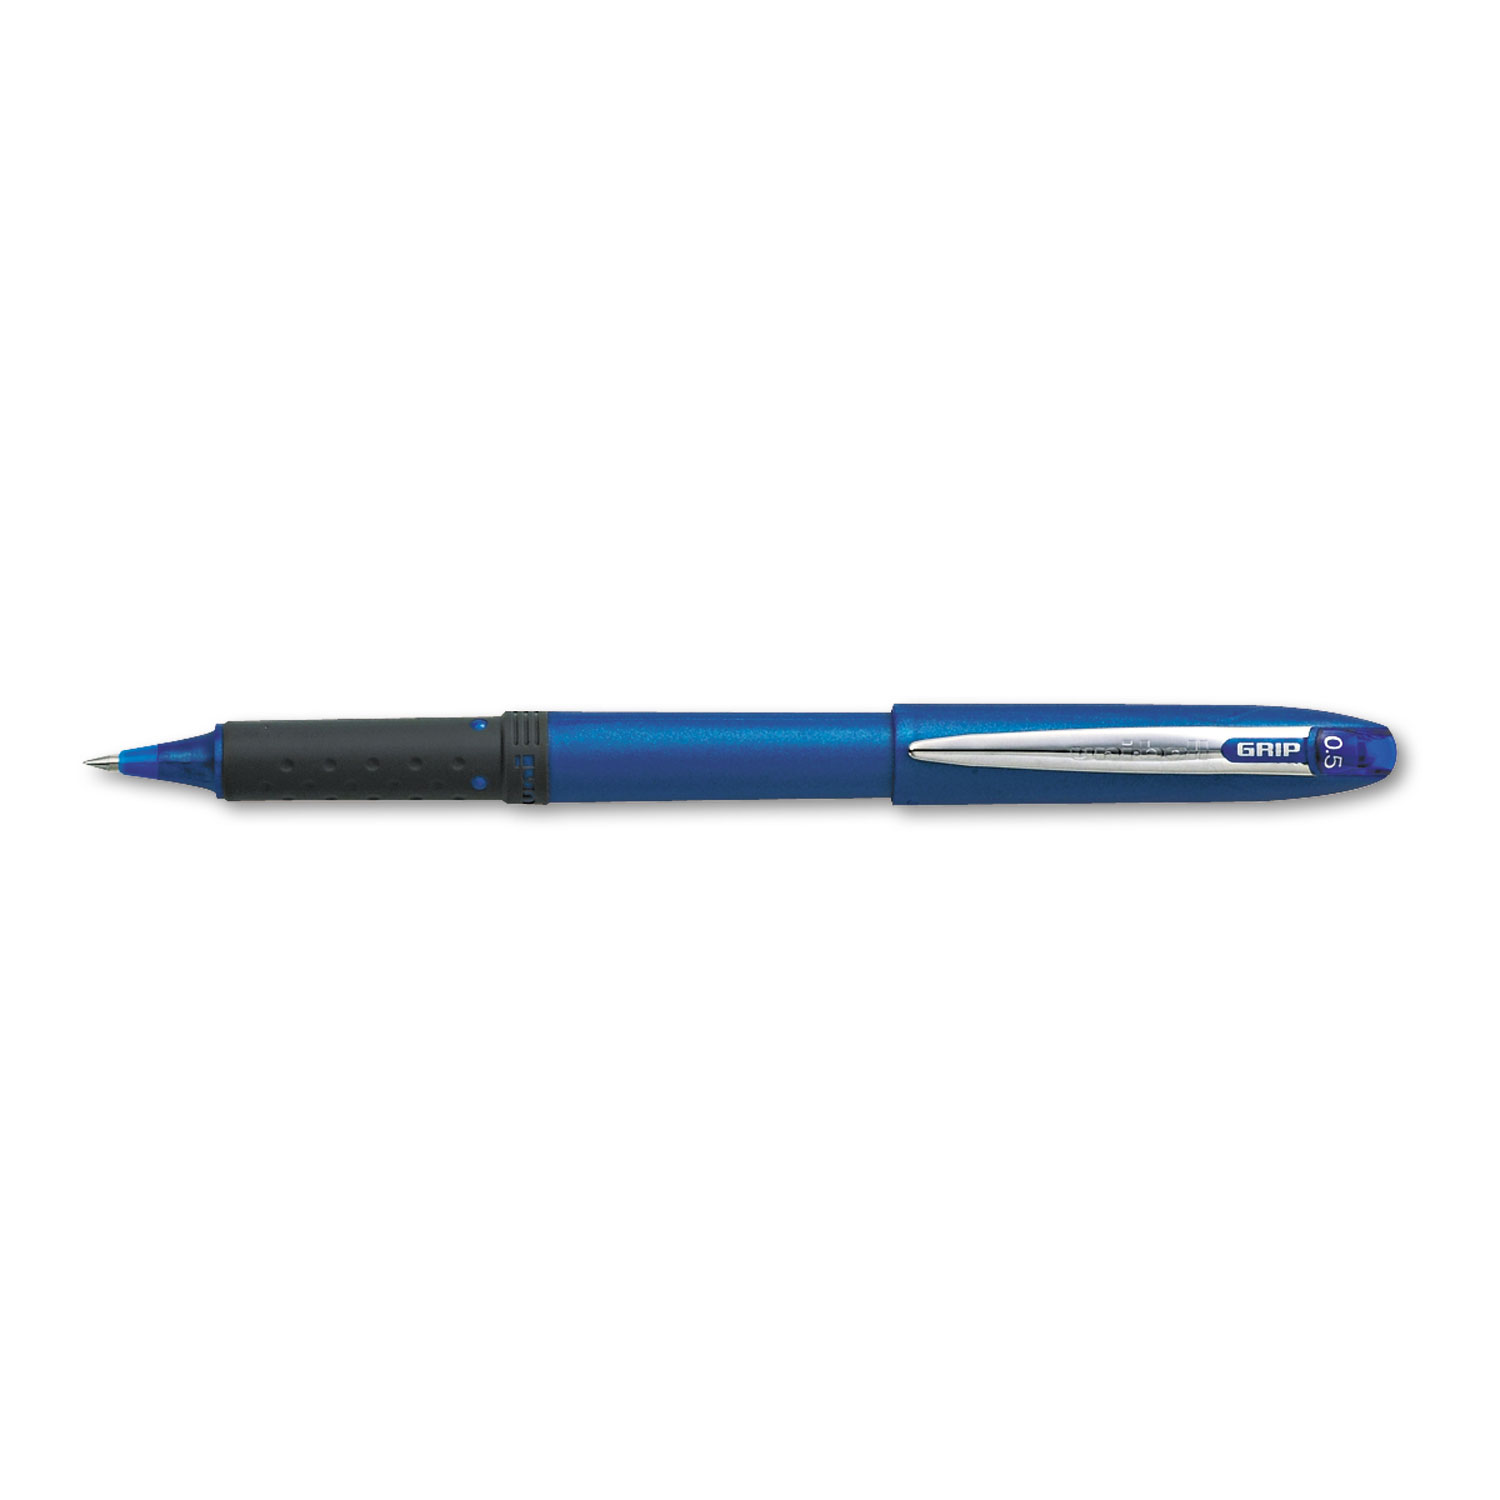  uni-ball 60705 Grip Stick Roller Ball Pen, Micro 0.5mm, Blue Ink/Barrel, Dozen (UBC60705) 